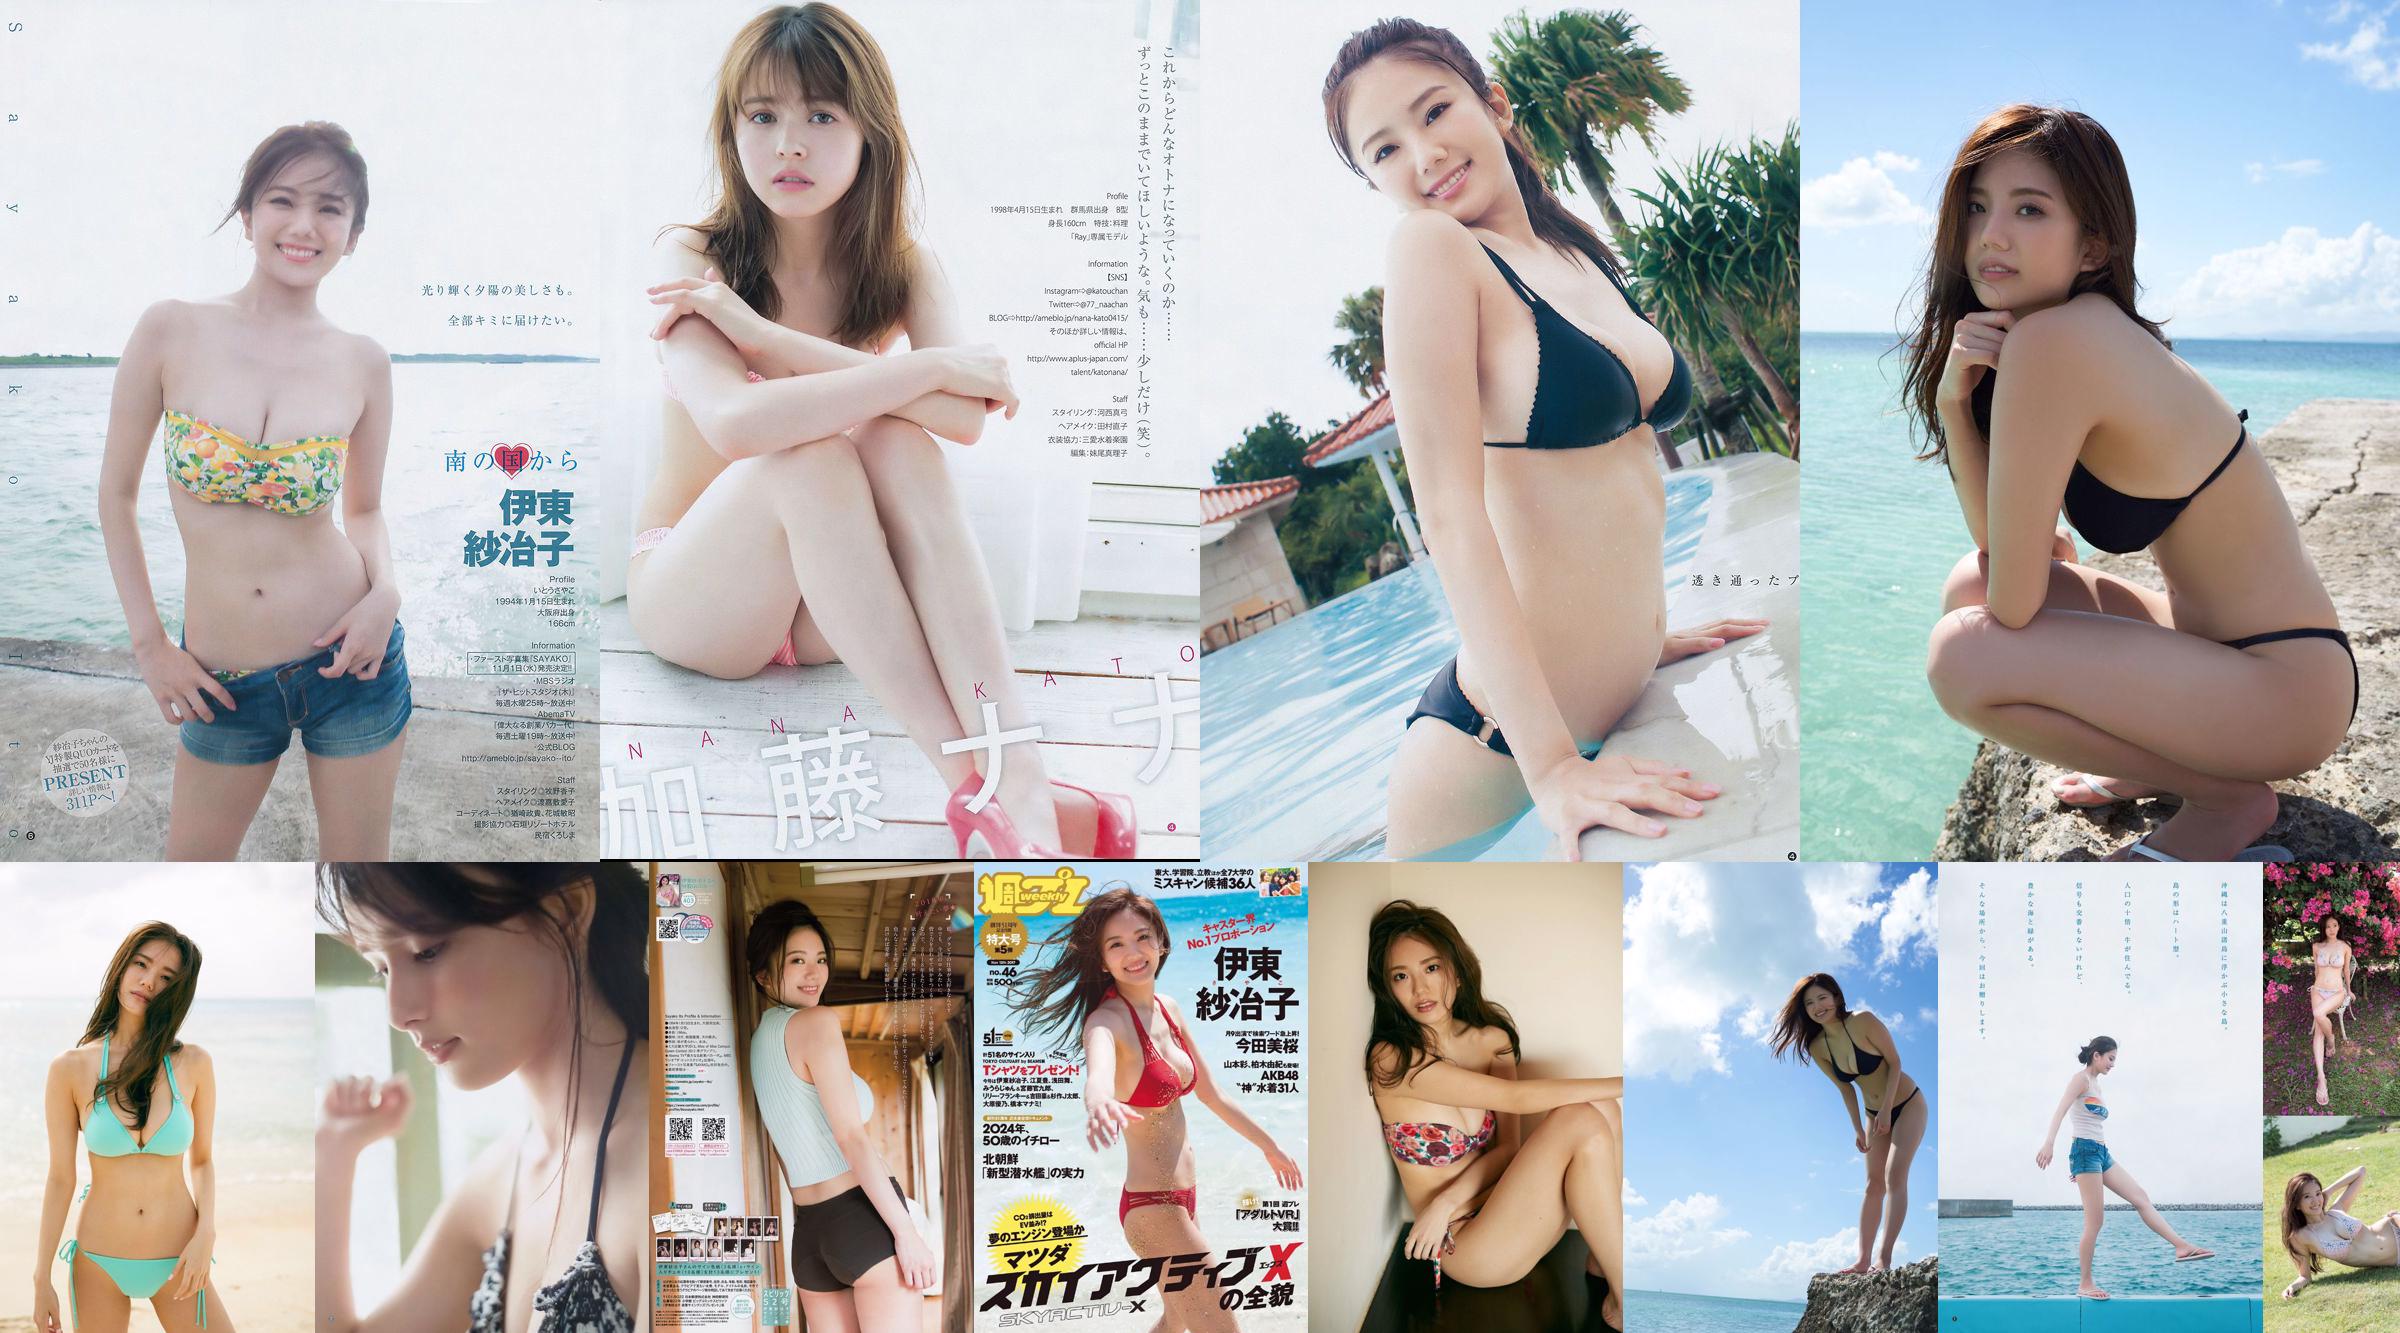 Ito Sayeko, Mima Reiko, Sugimoto Yumi, Sato Reina, Yoshiki りさ Toyama Akiko, Naninao [Weekly Playboy] 2016 No.36 Photo Magazine No.c6bf31 Page 3